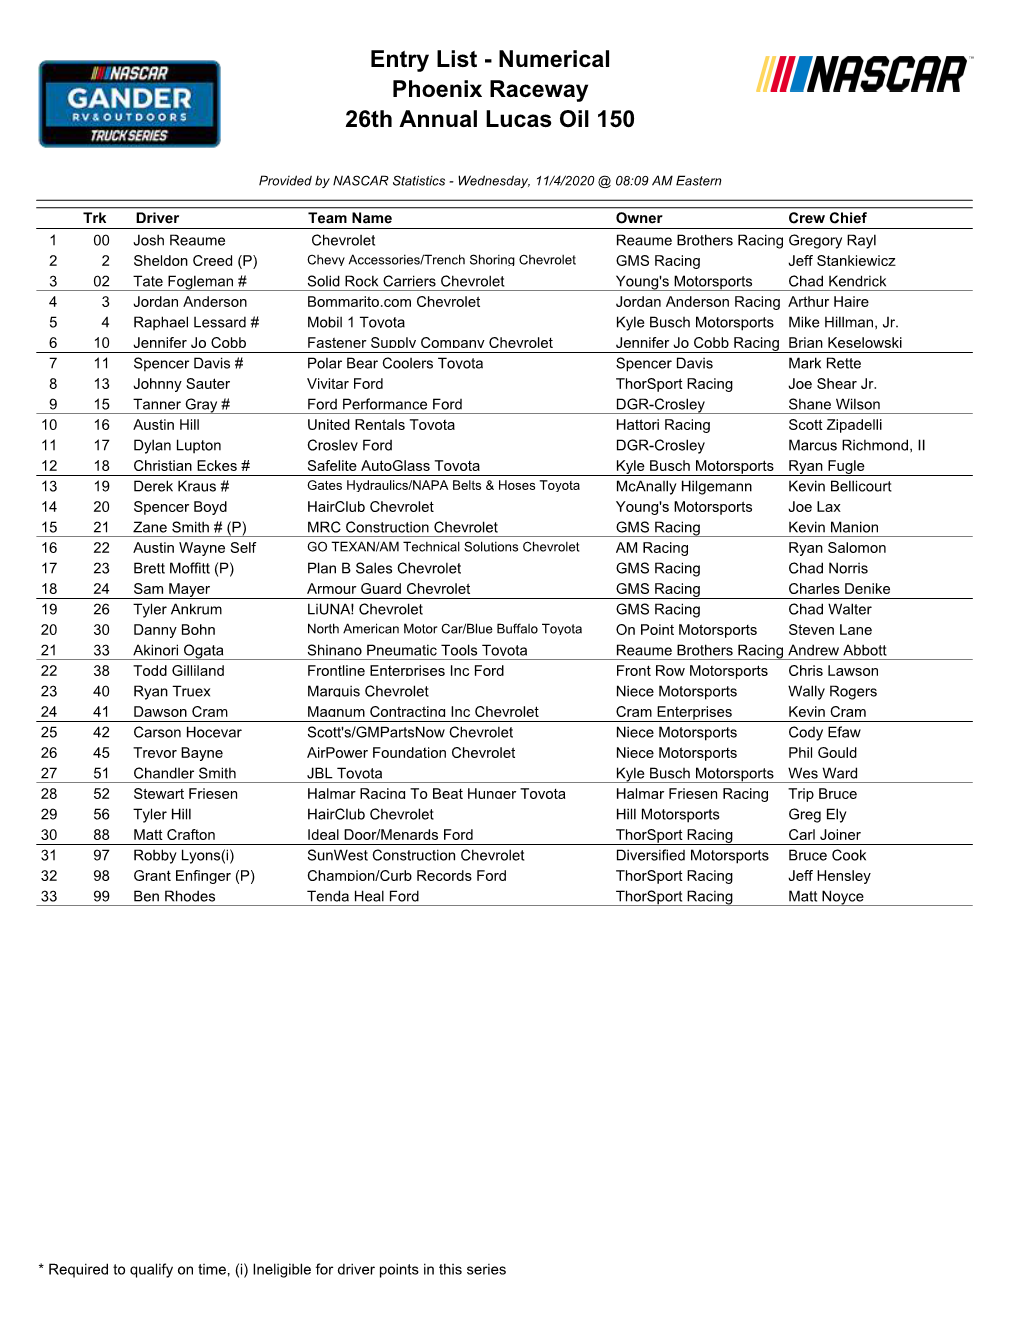 Entry List - Numerical Phoenix Raceway 26Th Annual Lucas Oil 150